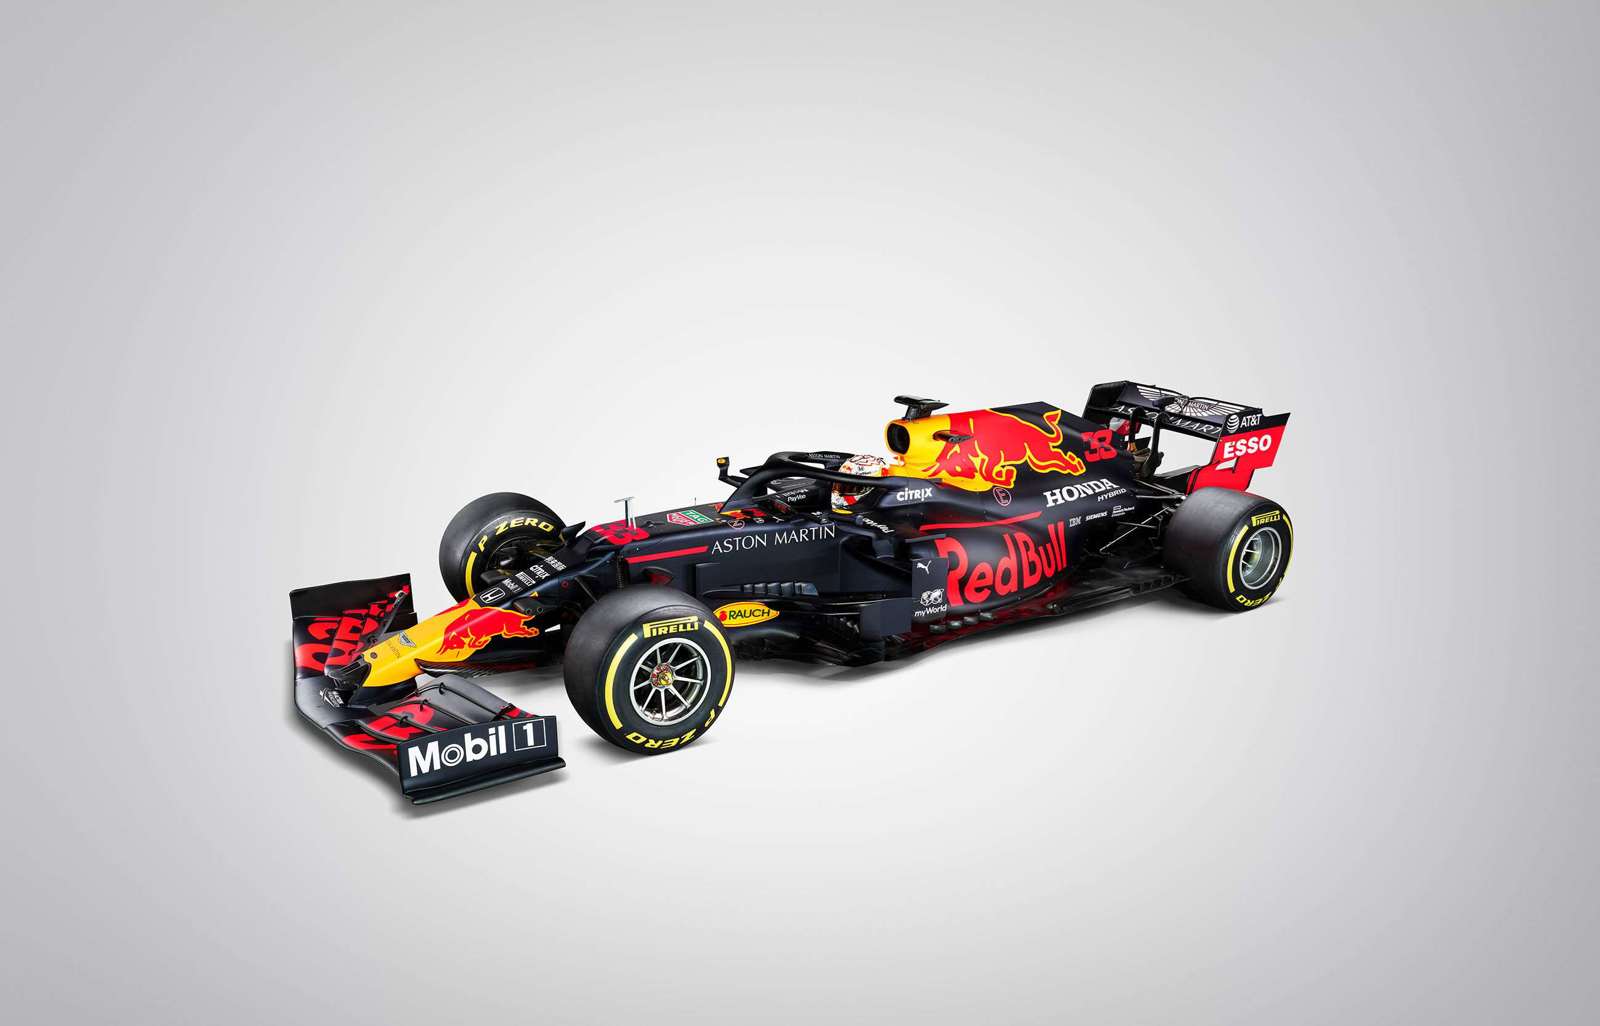 280 Red Bull Racing ideas  red bull racing, racing, formula 1